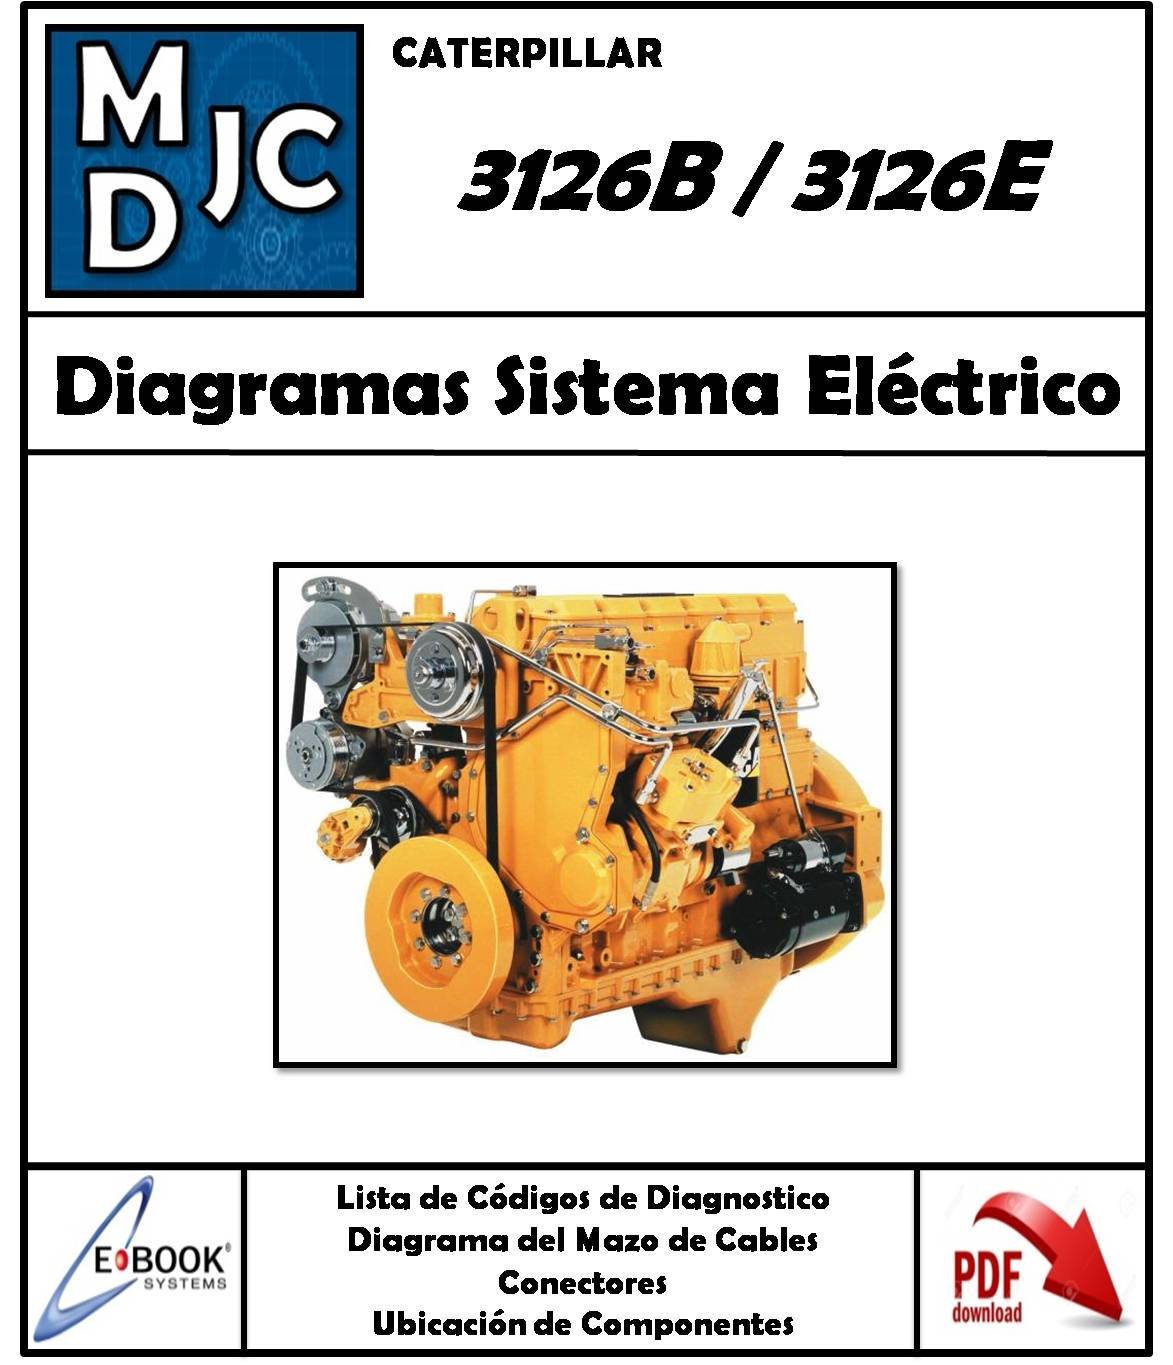 Manual de Diagramas Sistema Eléctrico Motor Caterpillar 3126B / 3126E